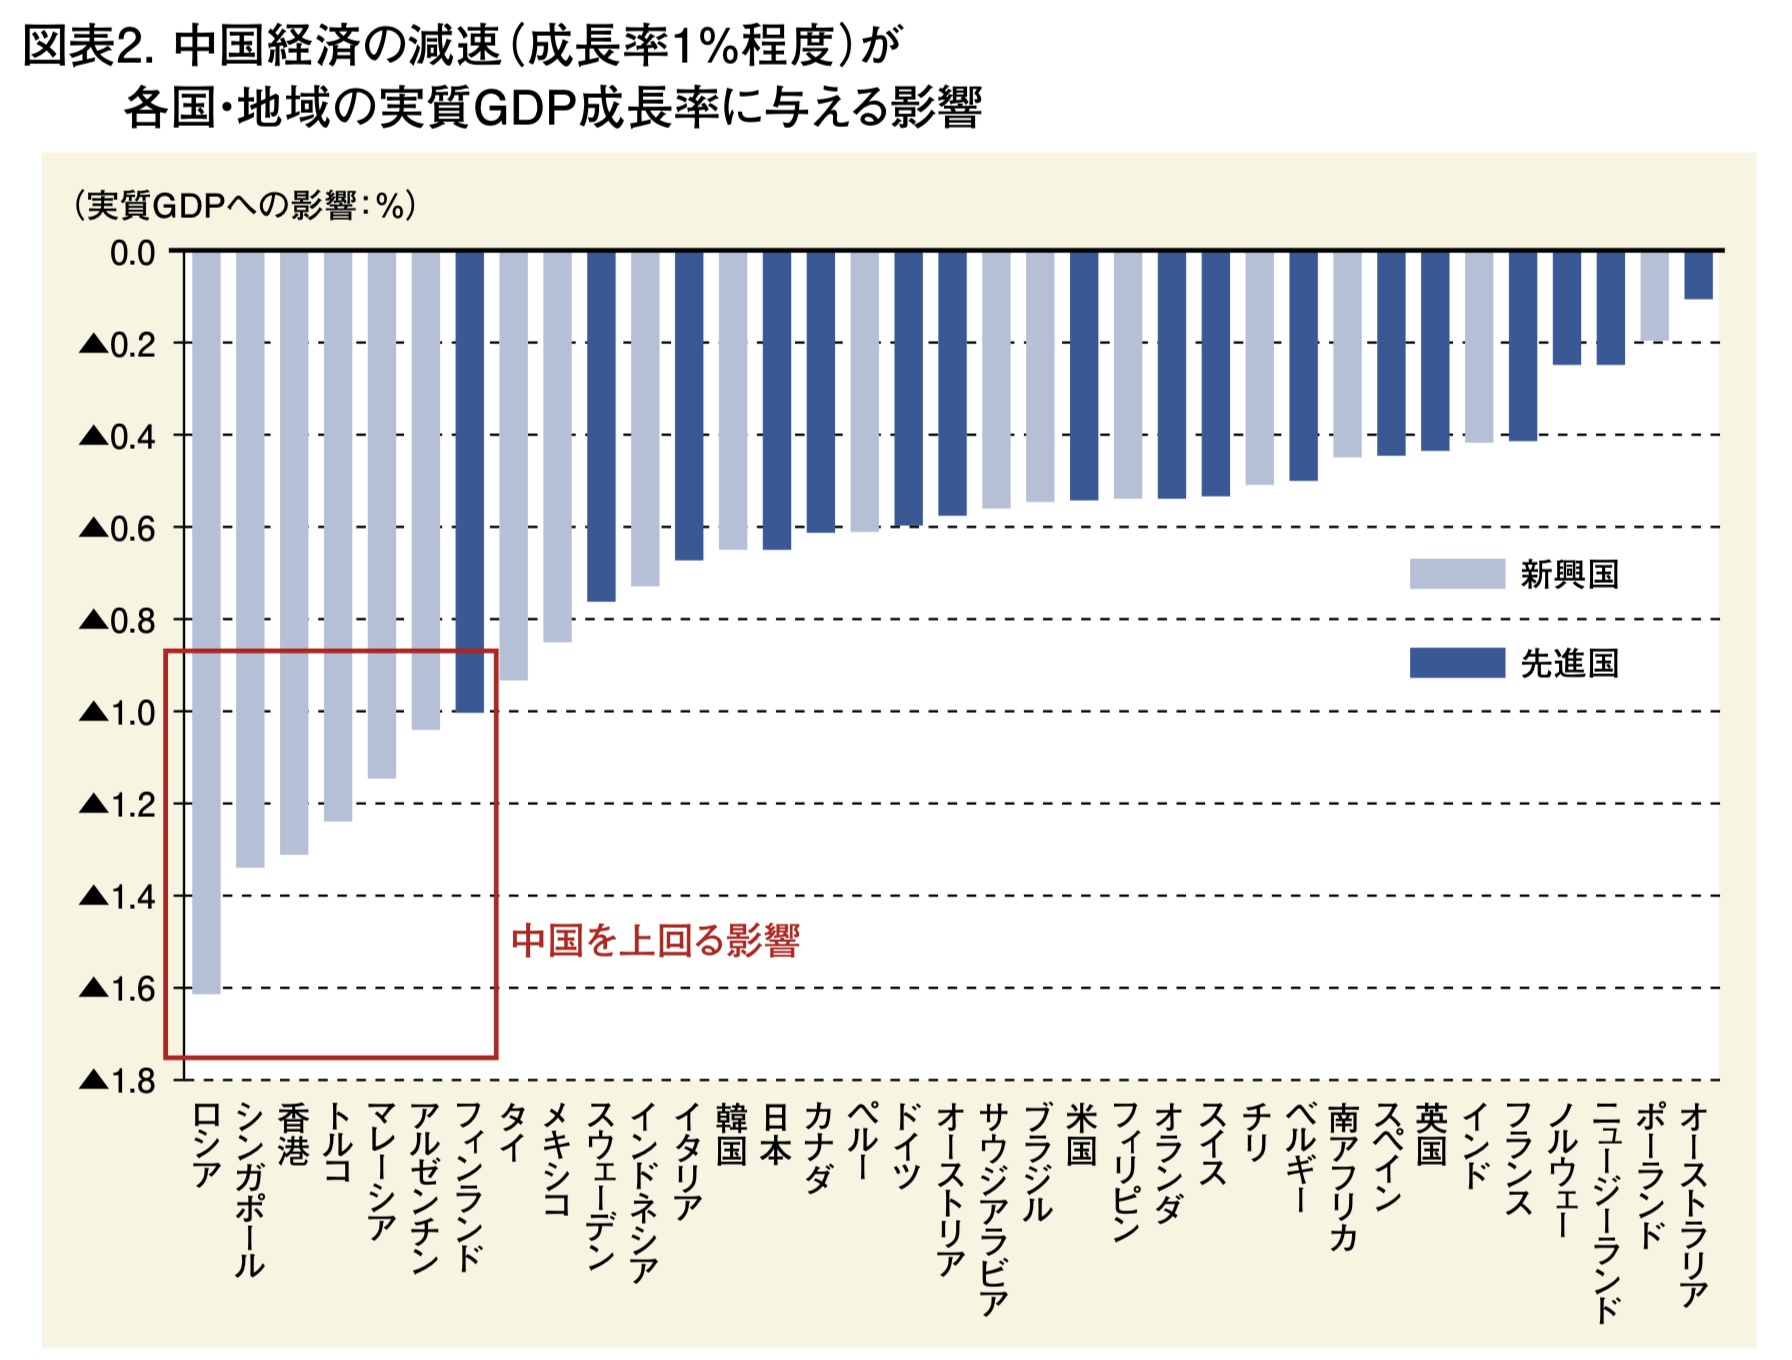 中国経済の減速が各国に与える影響の度合いの大きさ